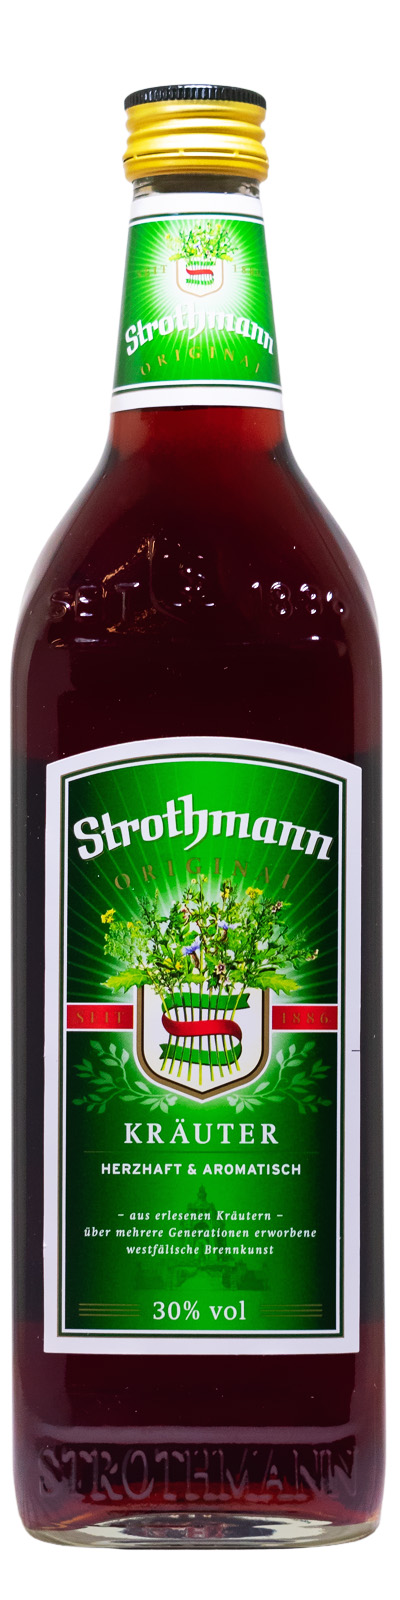 Strothmann Kräuter - 0,7L 30% vol